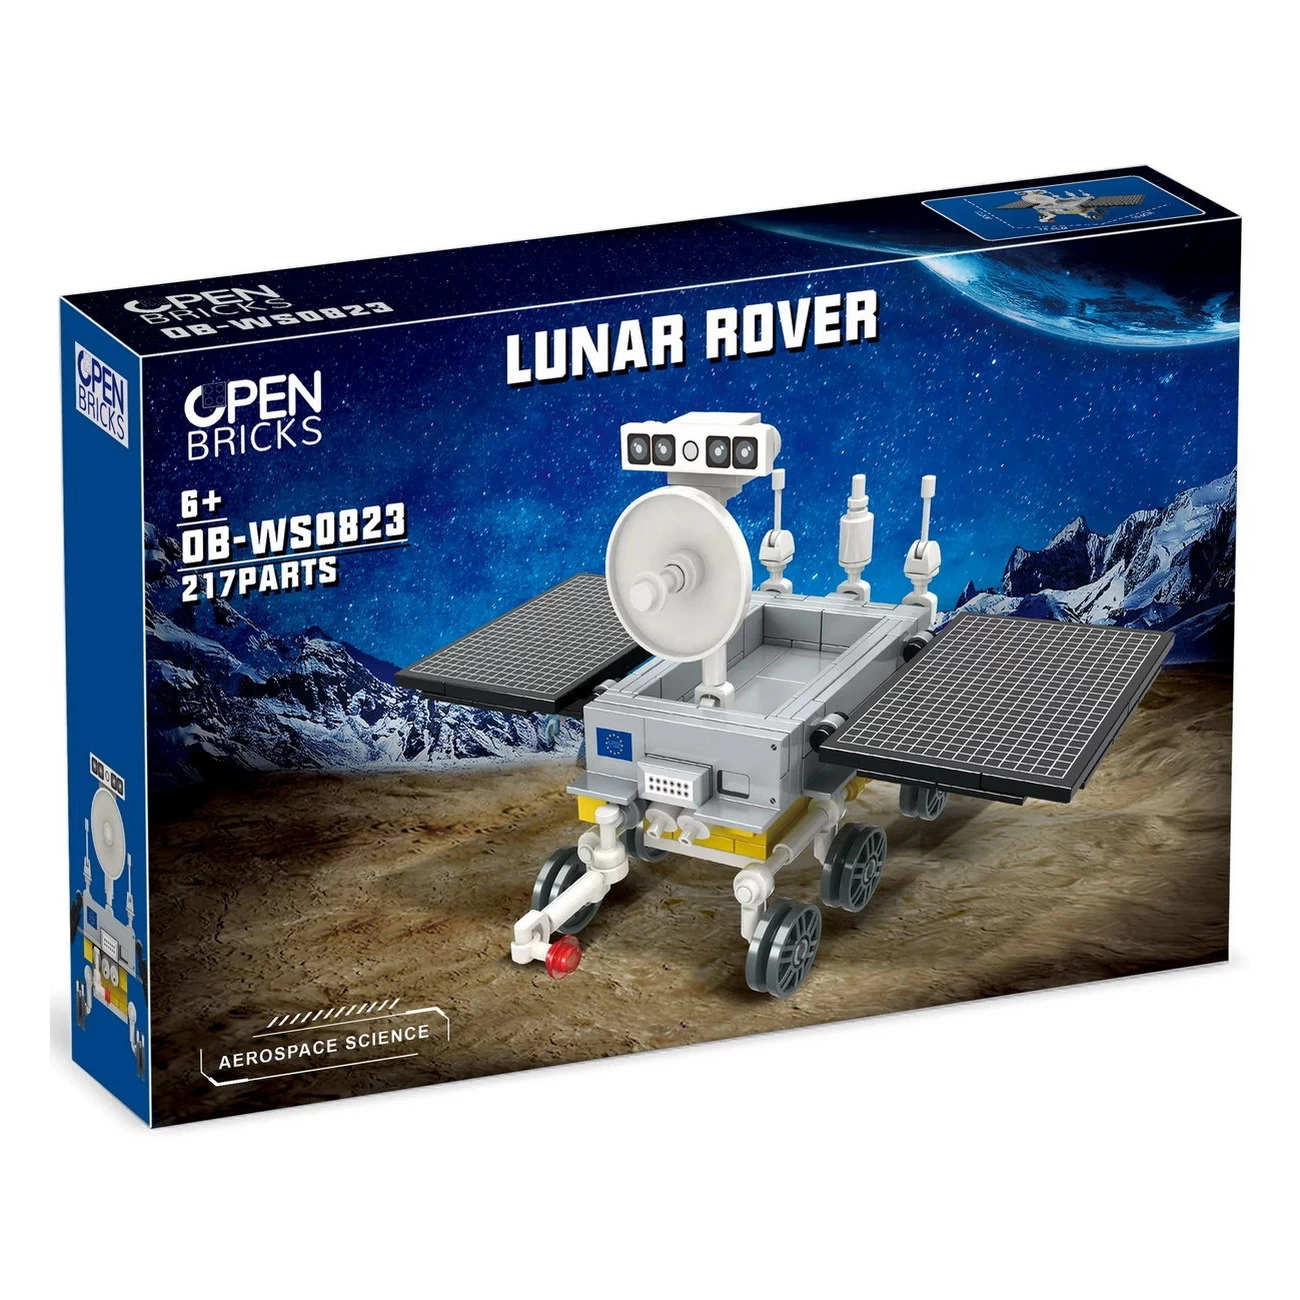 Lunar Rover OPEN BRICKS